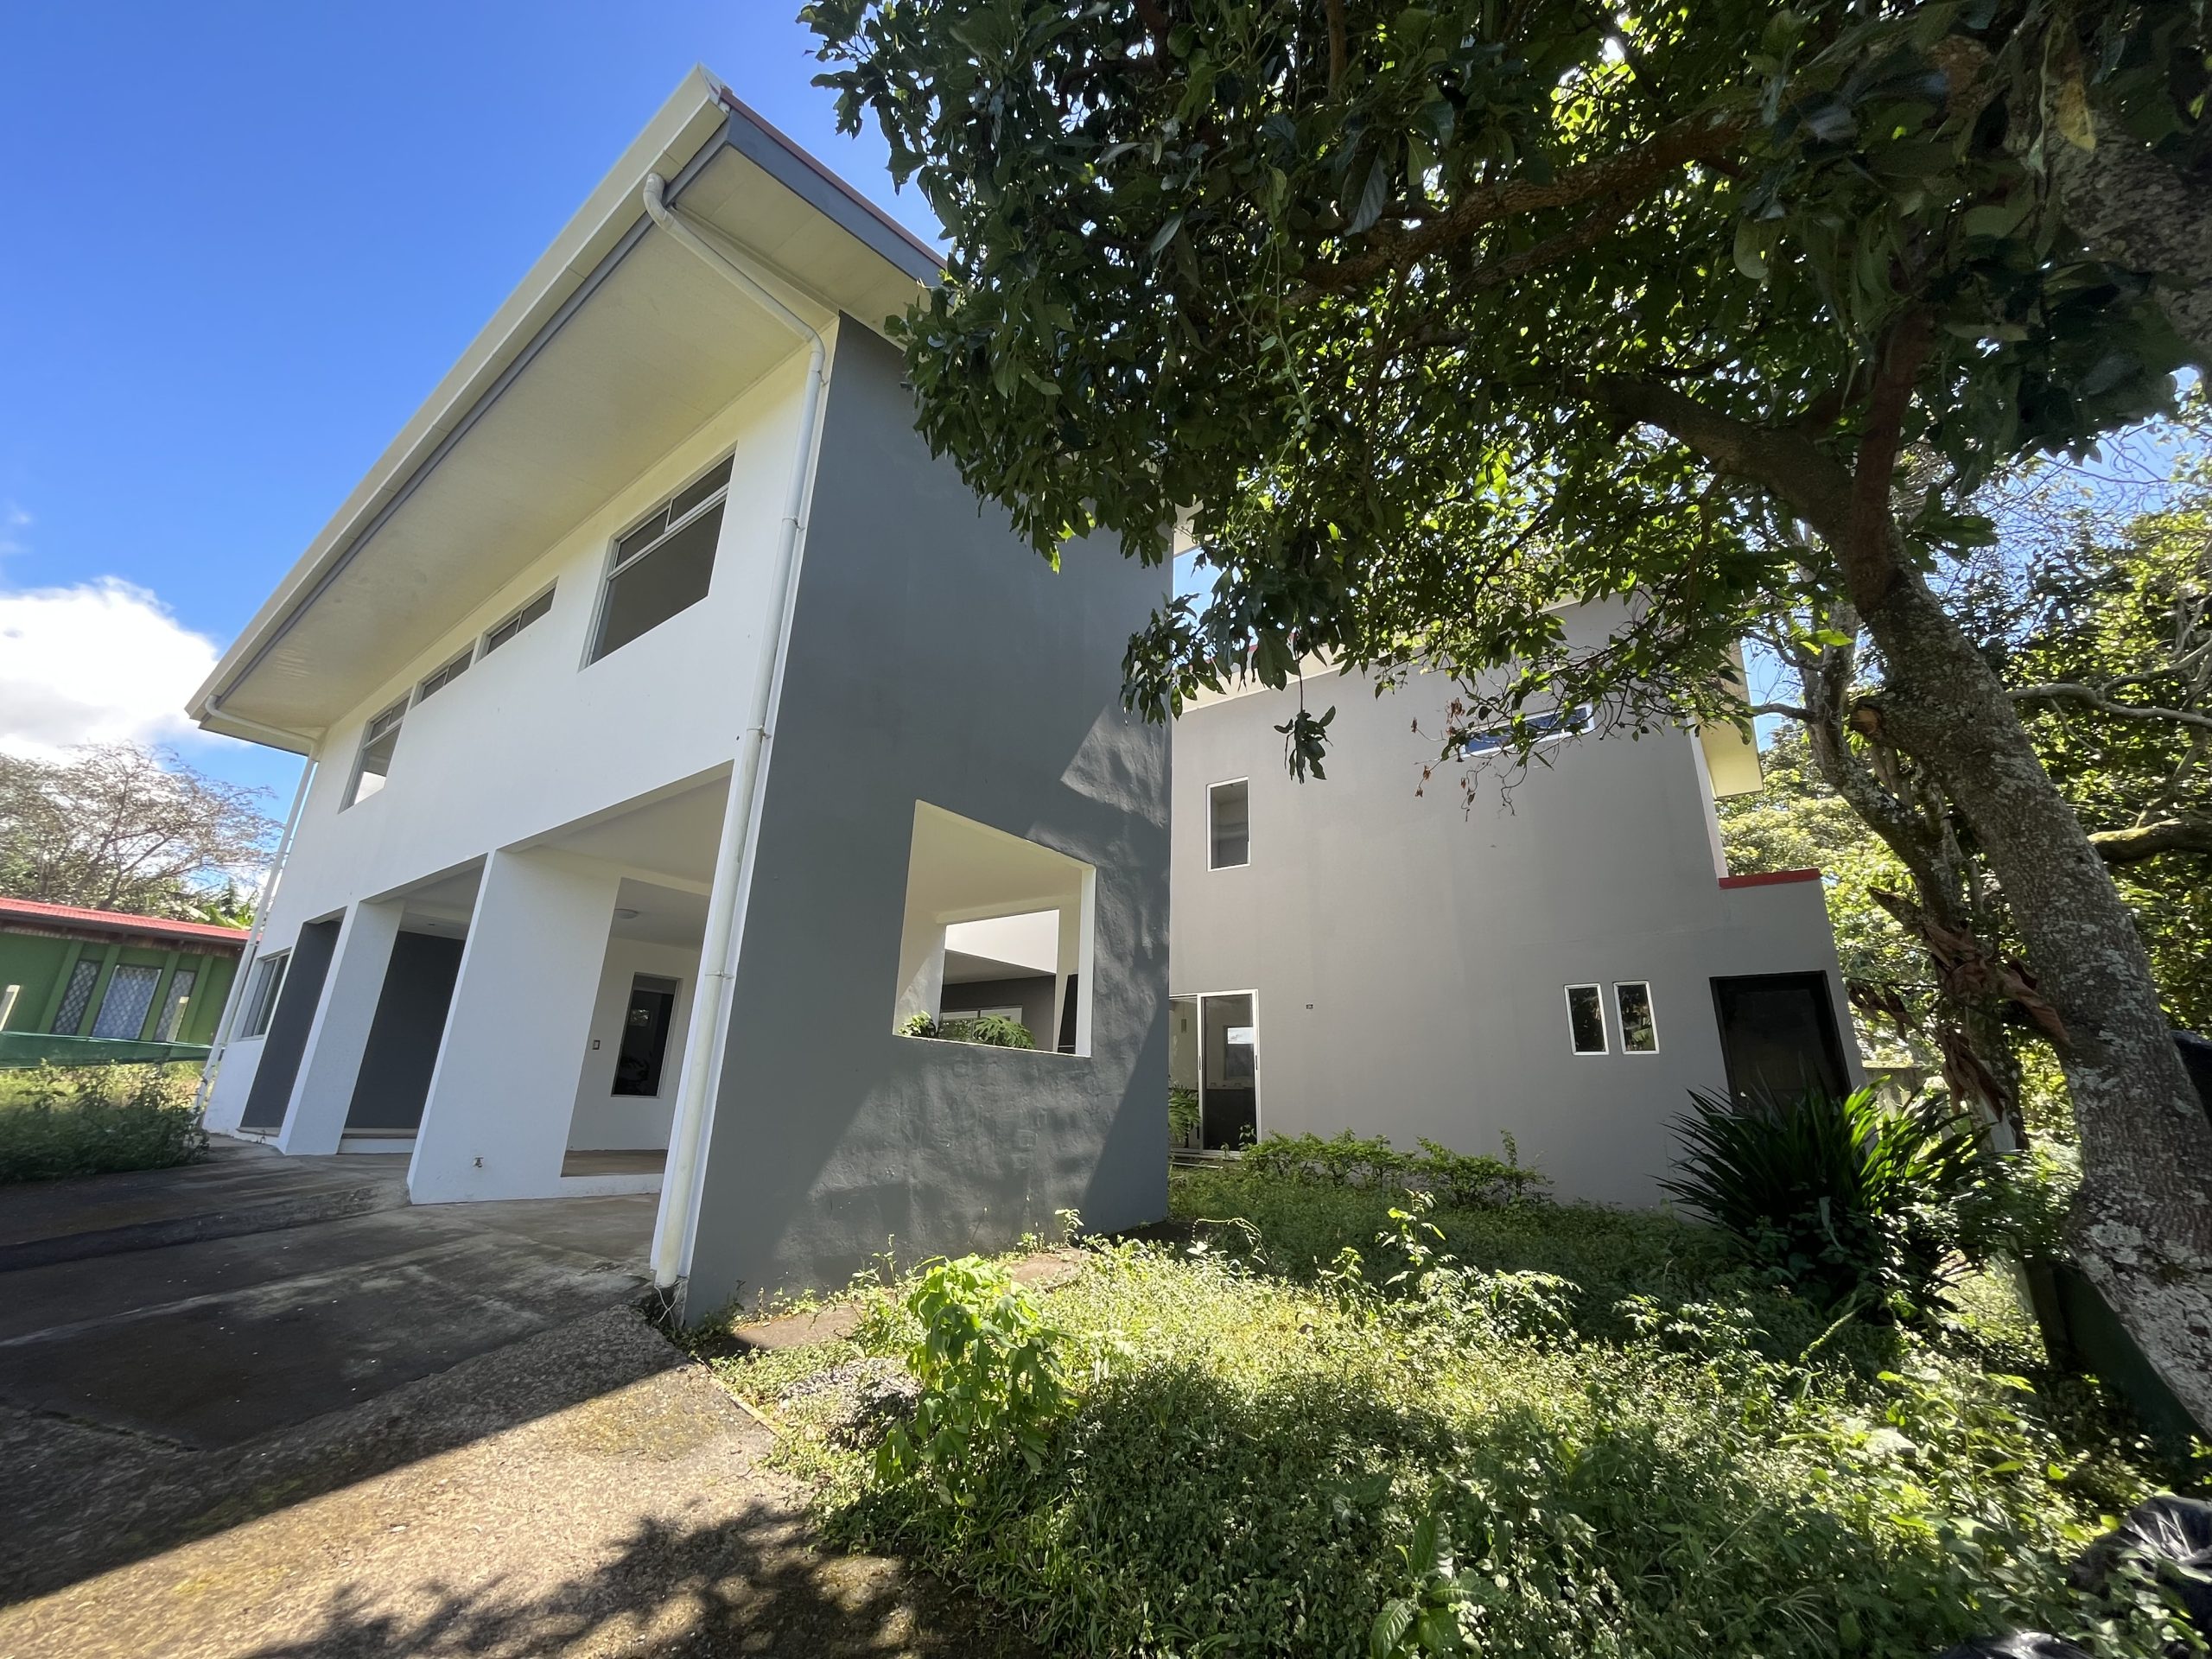 Alquiler Casa 300 m2 en San Pedro, Barva. Amplias zonas verdes, 4 habitaciones, oficina, cada habitación cuenta con baño